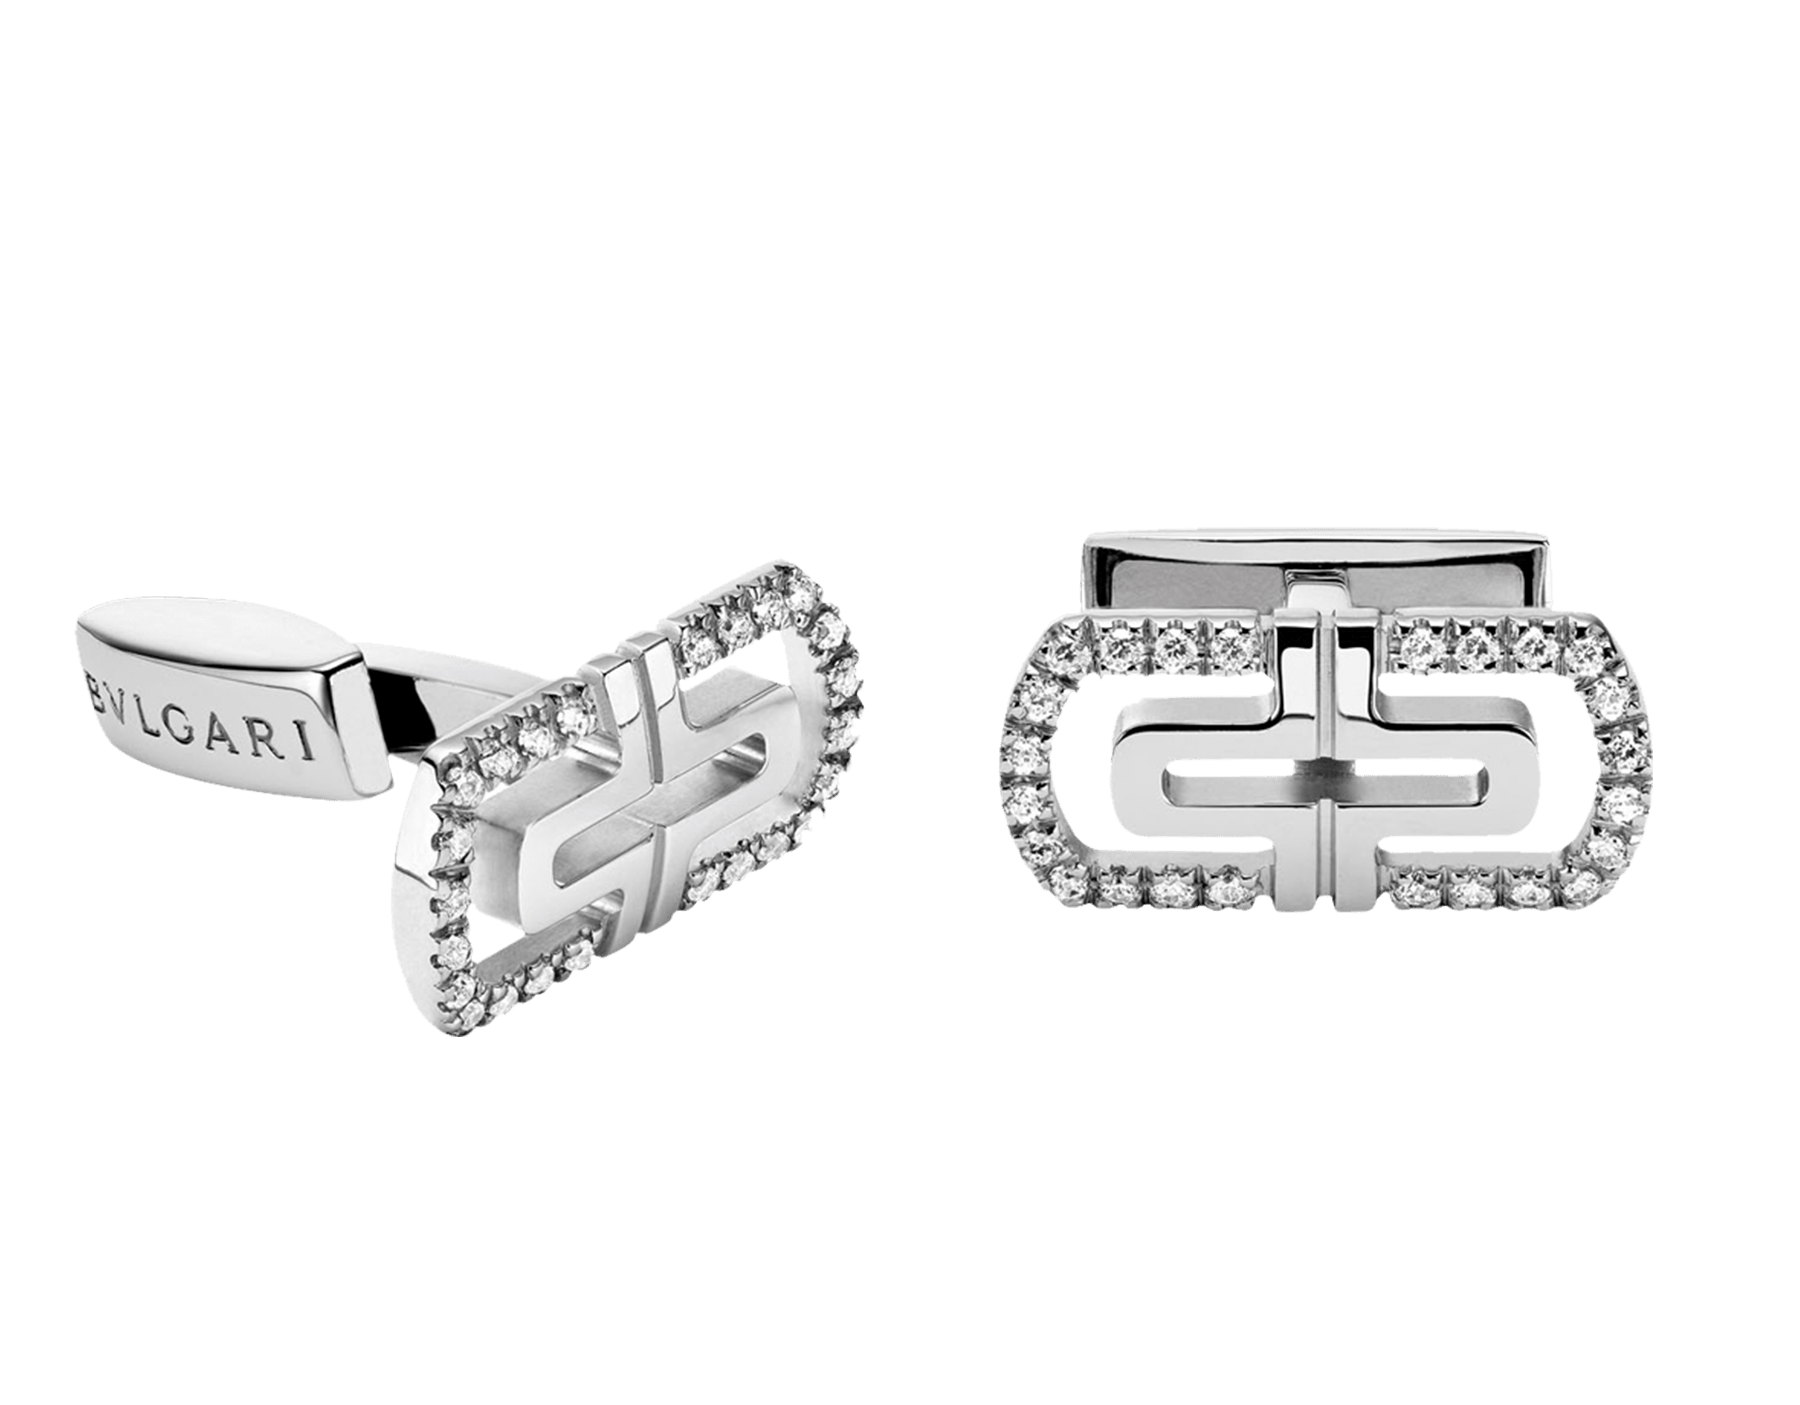 bvlgari parentesi diamond bracelet